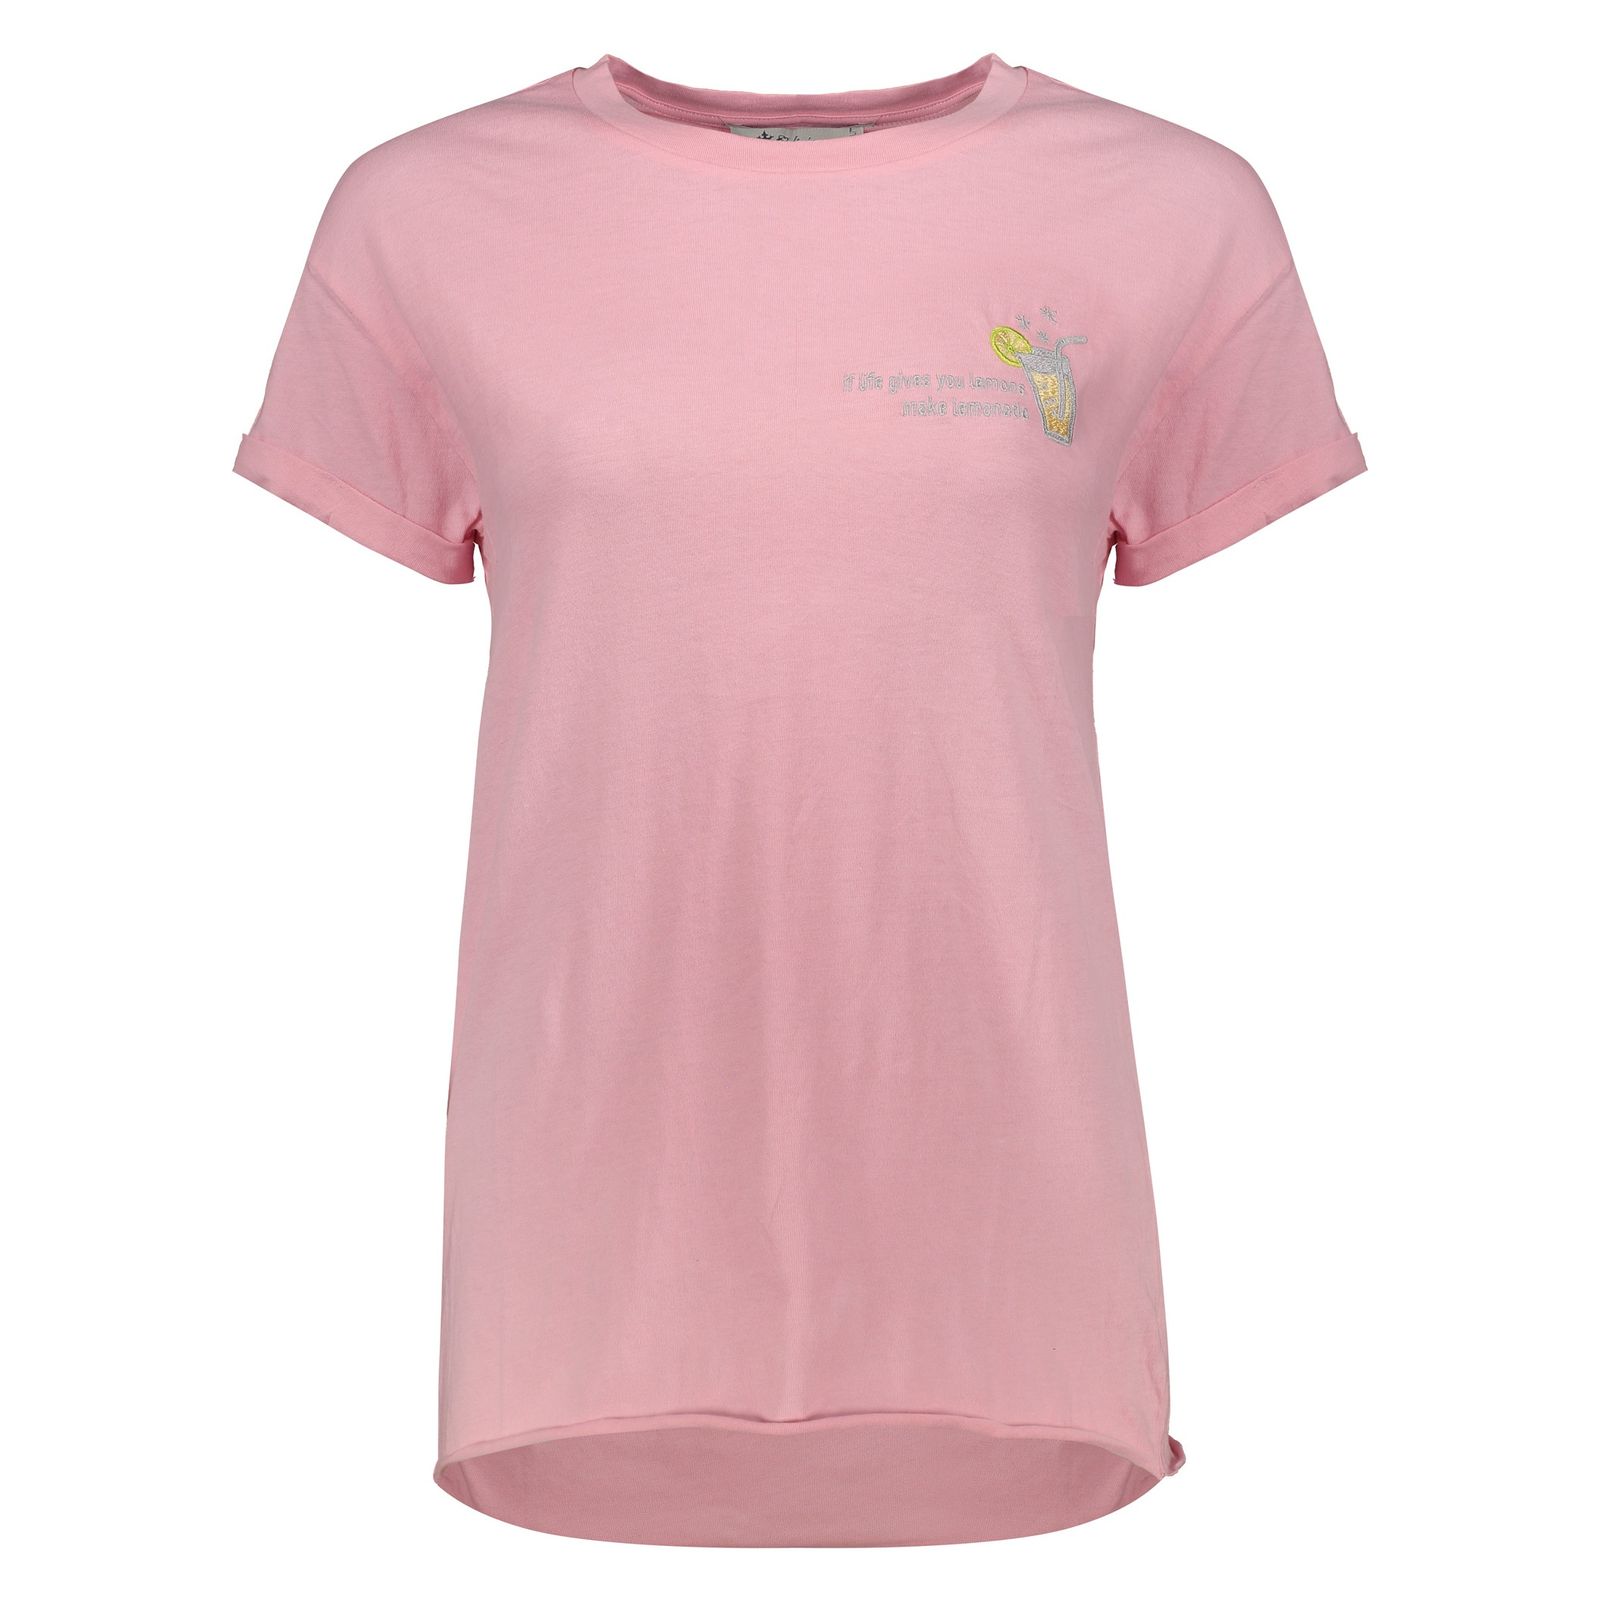 تی شرت زنانه کالینز مدل CL1034147-PINK - صورتی - 2